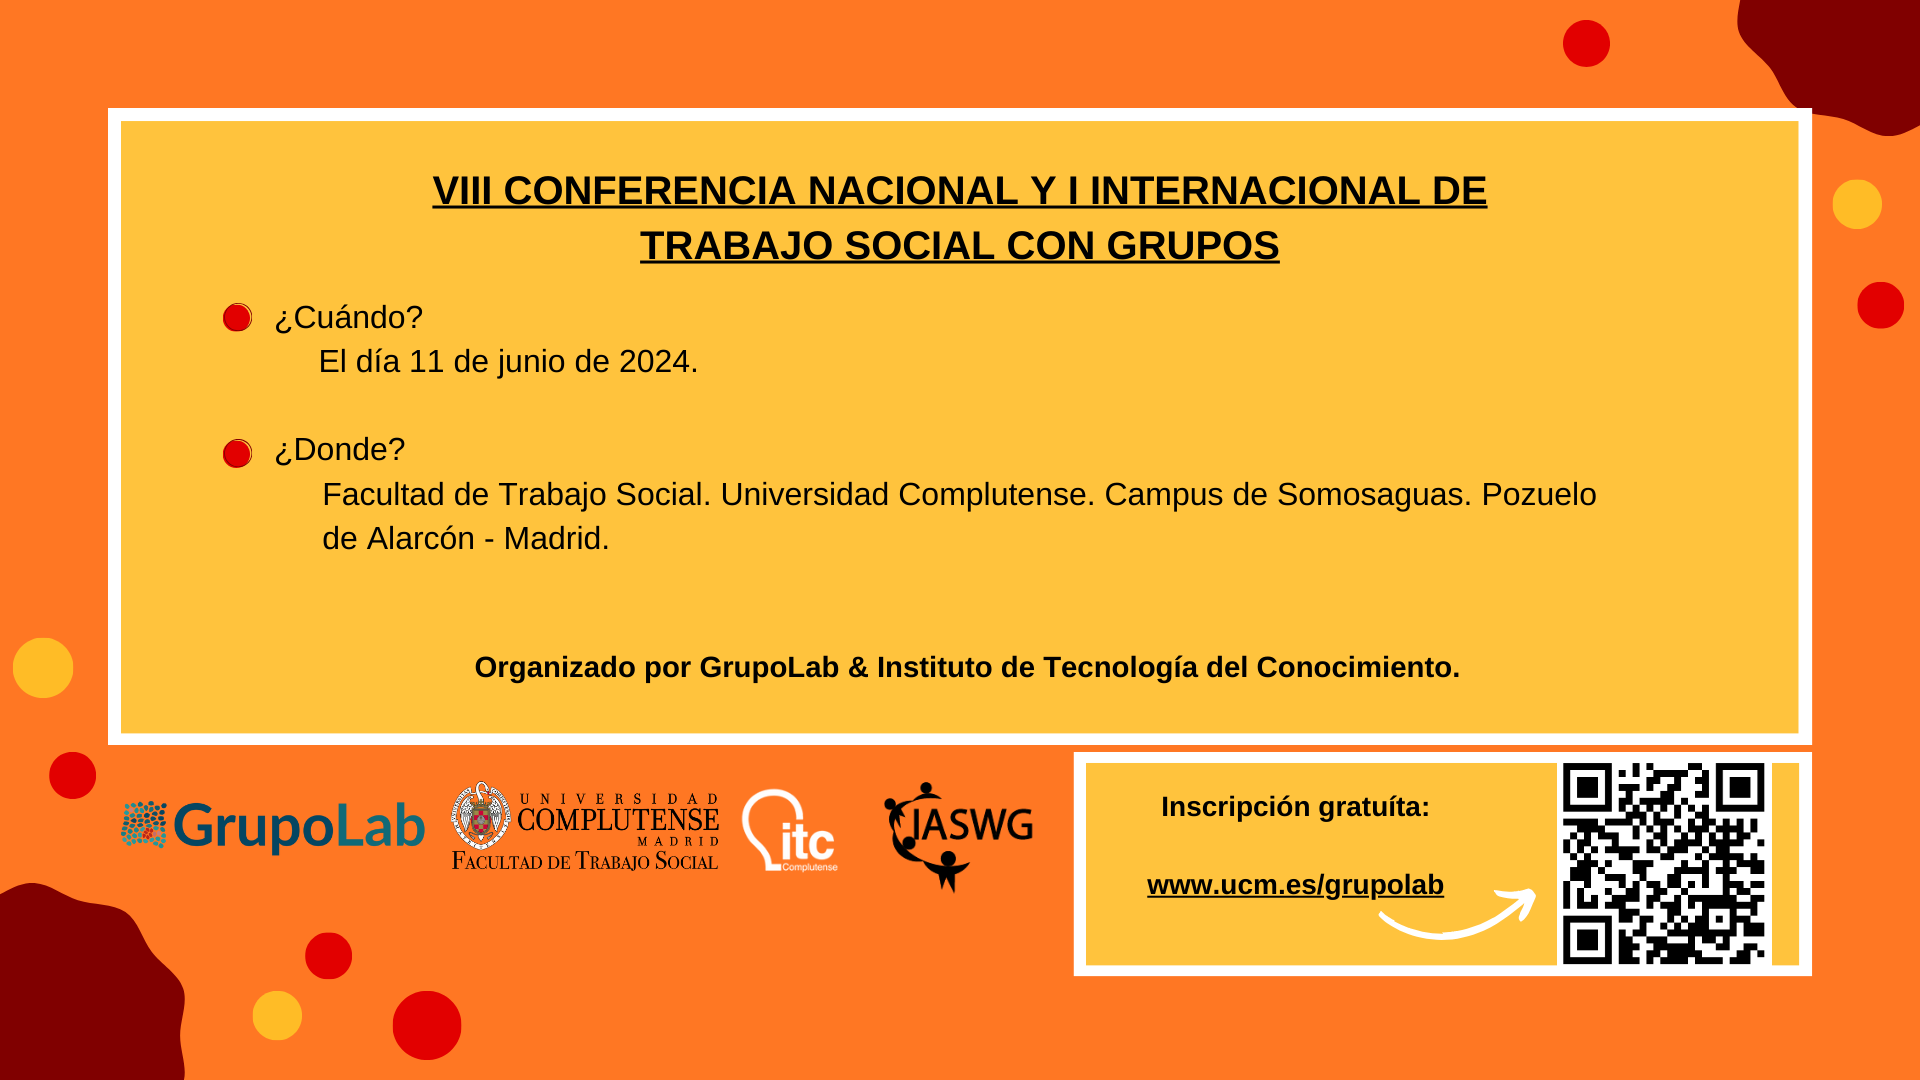 VIII CONFERENCIA NACIONAL Y I INTERNACIONAL DE TRABAJO SOCIAL CON GRUPOS - ACTIVIDAD PRECONGRESUAL DEL IASWG MADRID SYMPOSIUM